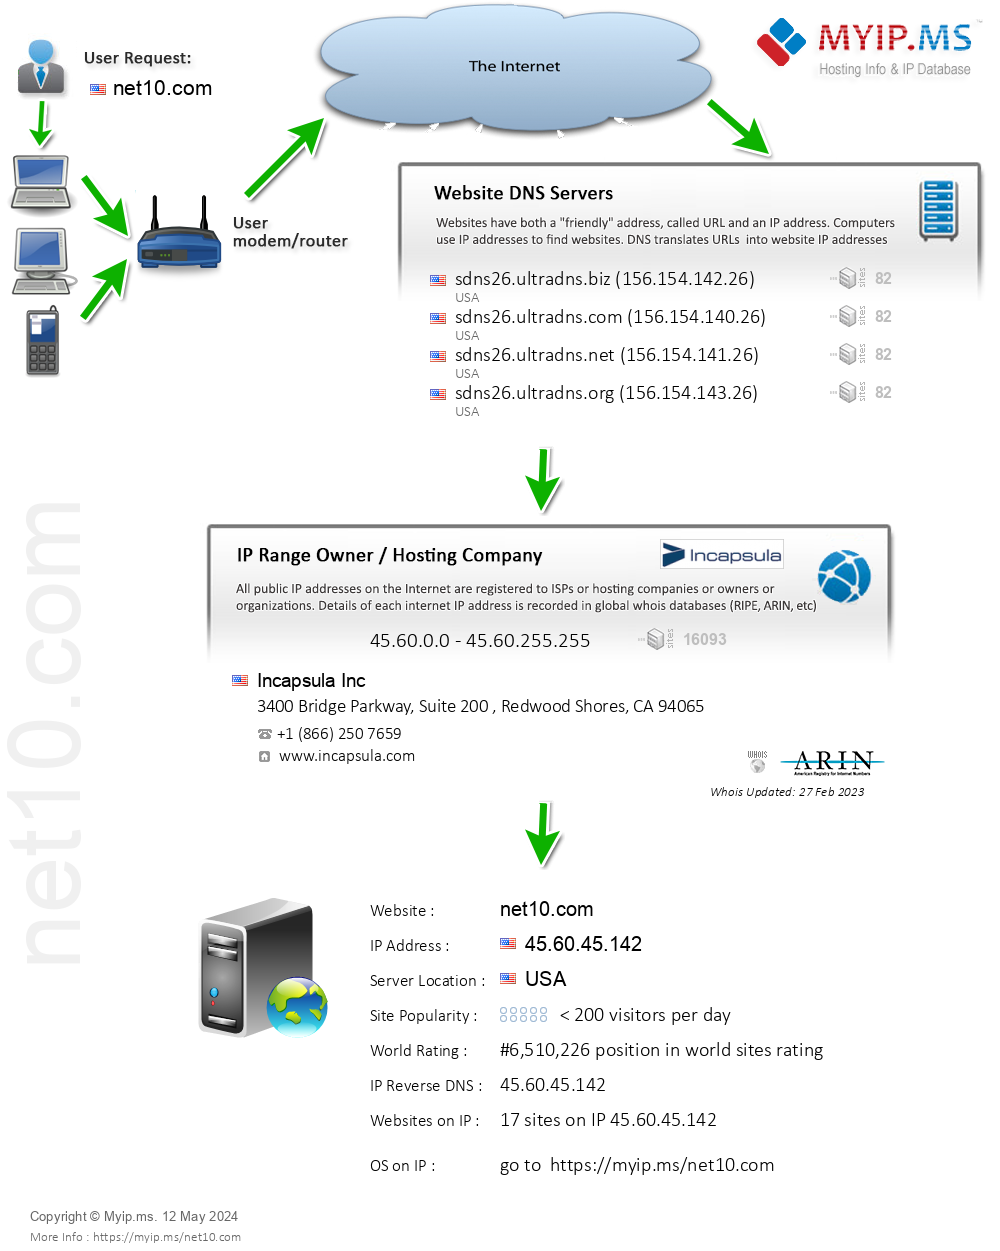 Net10.com - Website Hosting Visual IP Diagram